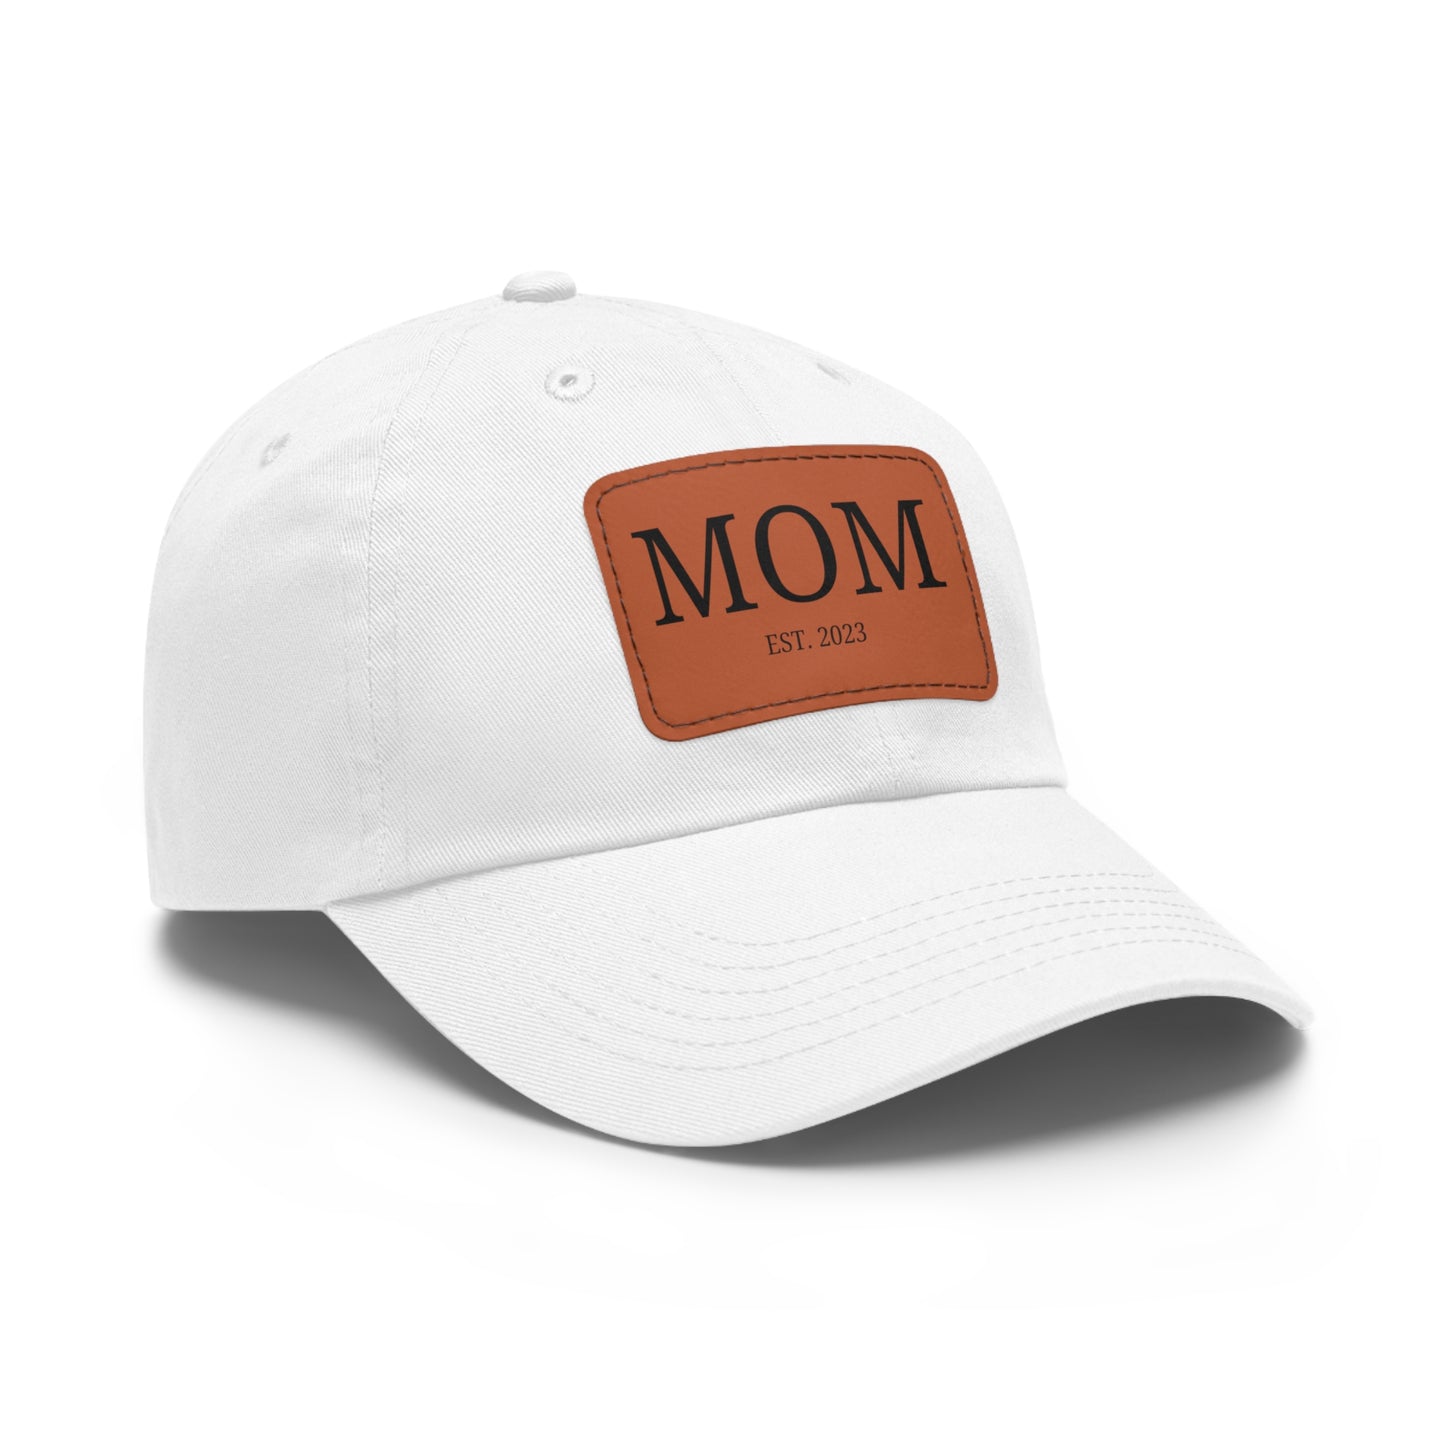 Mom Est. 2023 Hat